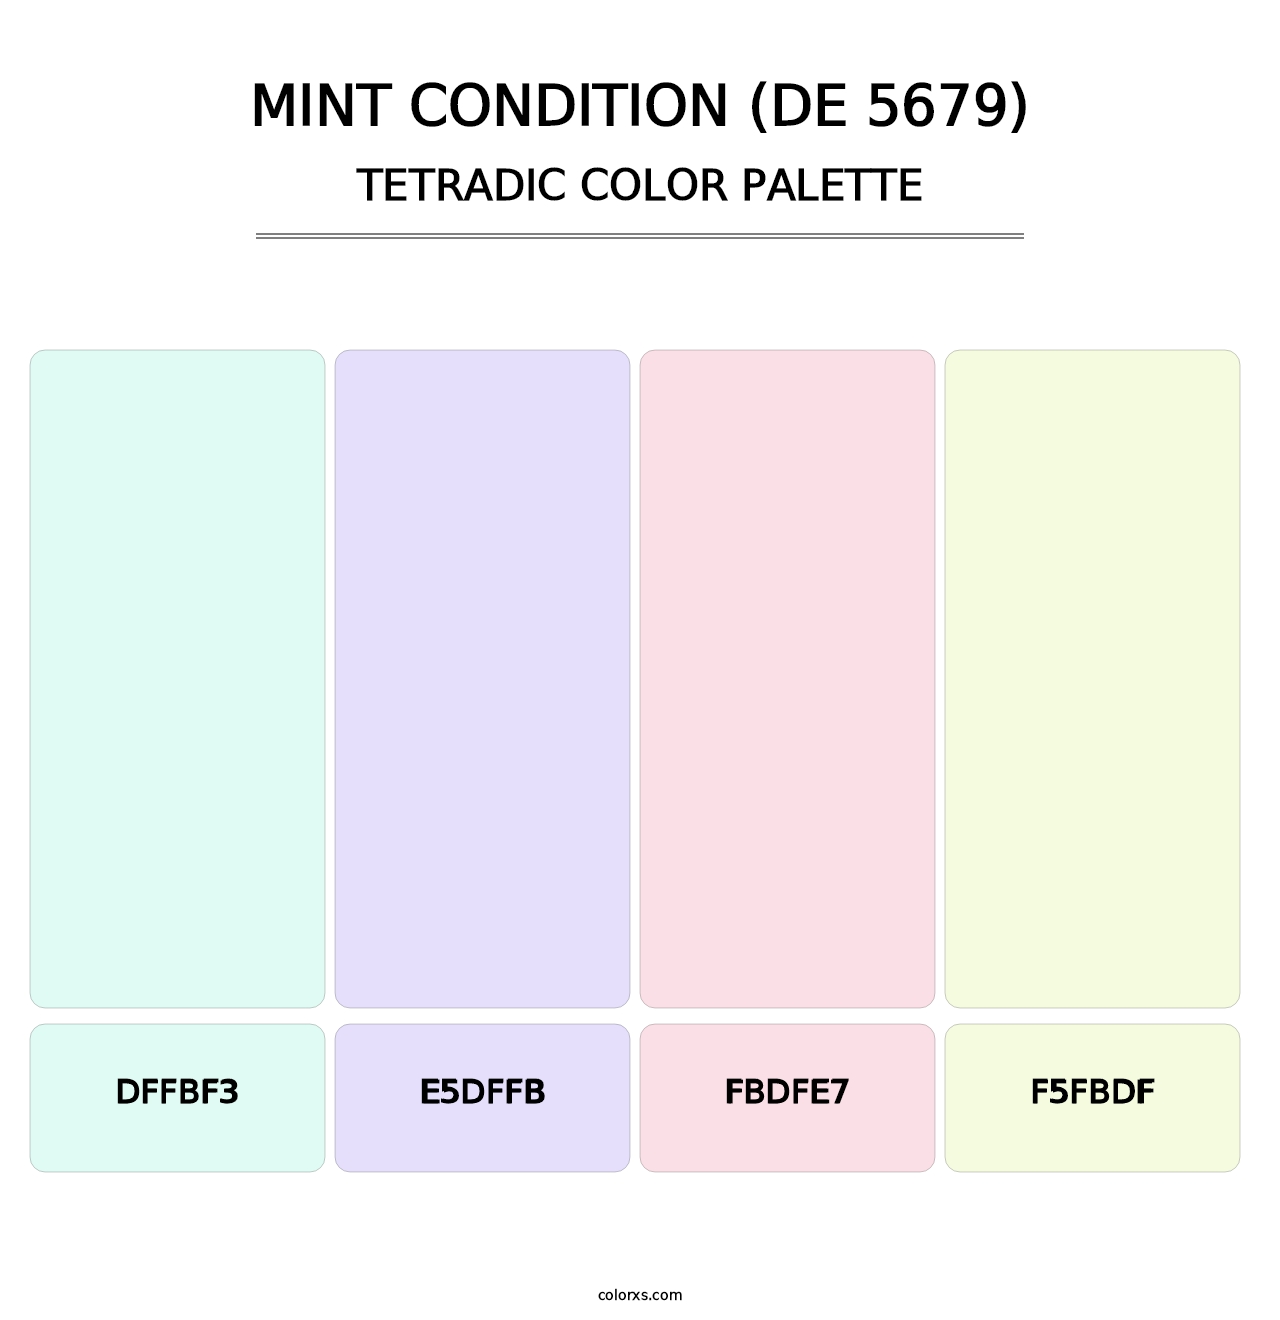 Mint Condition (DE 5679) - Tetradic Color Palette